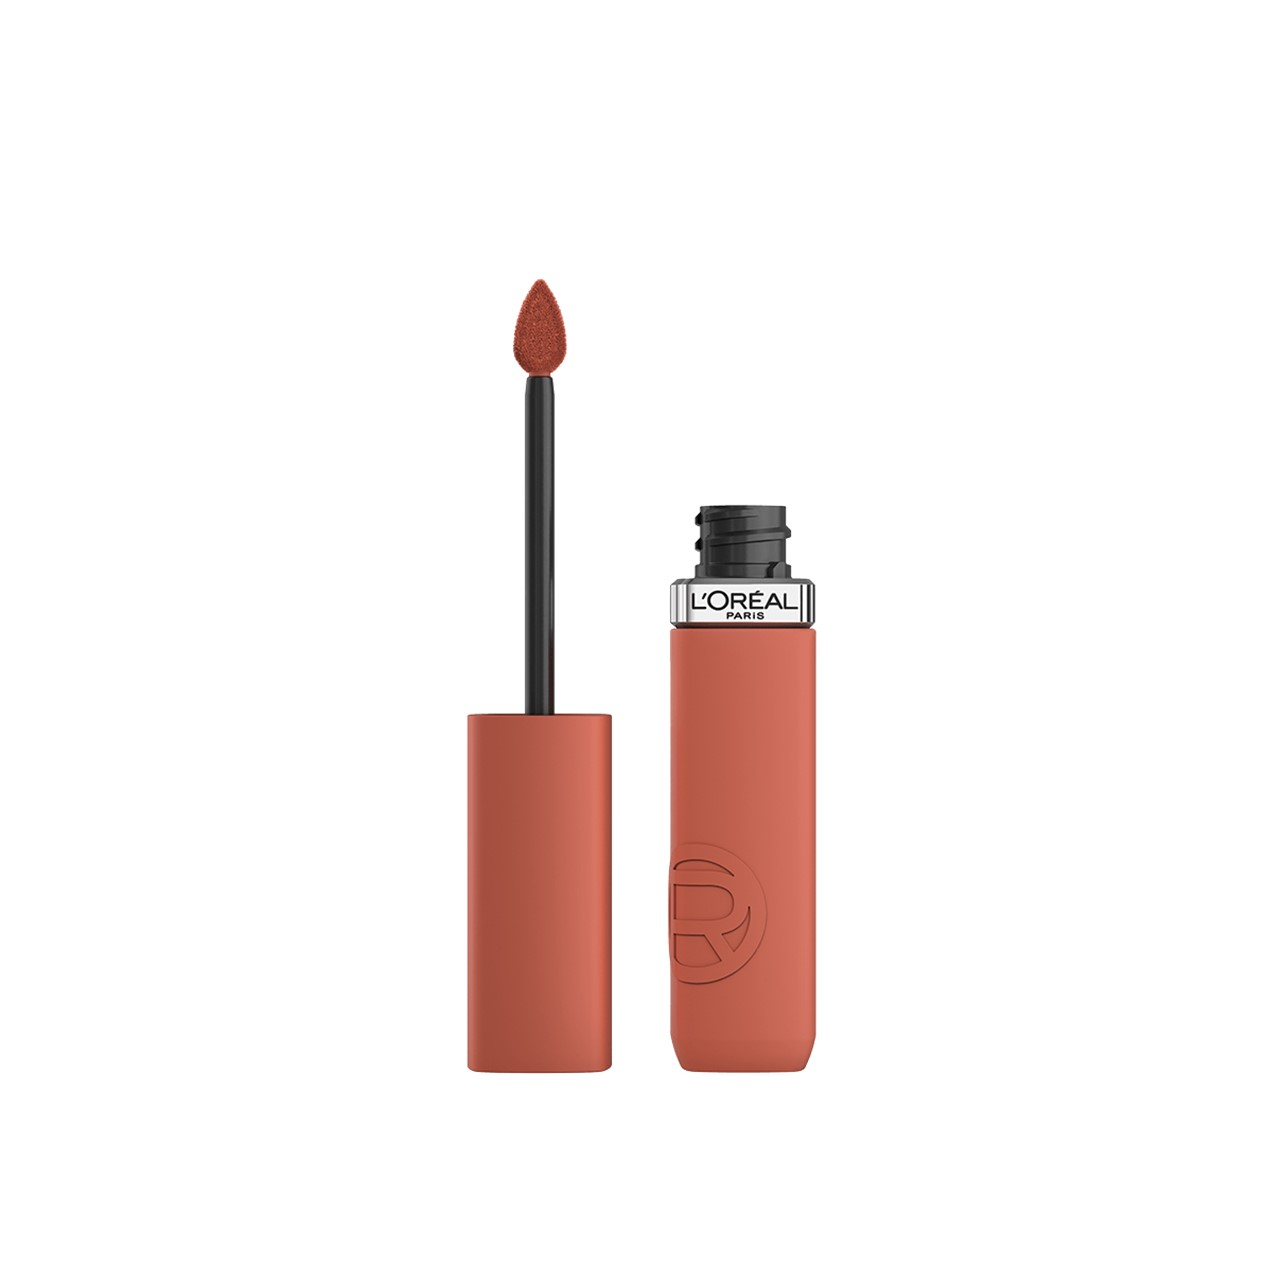 L'Oréal Paris Infallible Matte Resistance Liquid Lipstick 115 Snooze Your Alarm 5ml (0.17 fl oz)